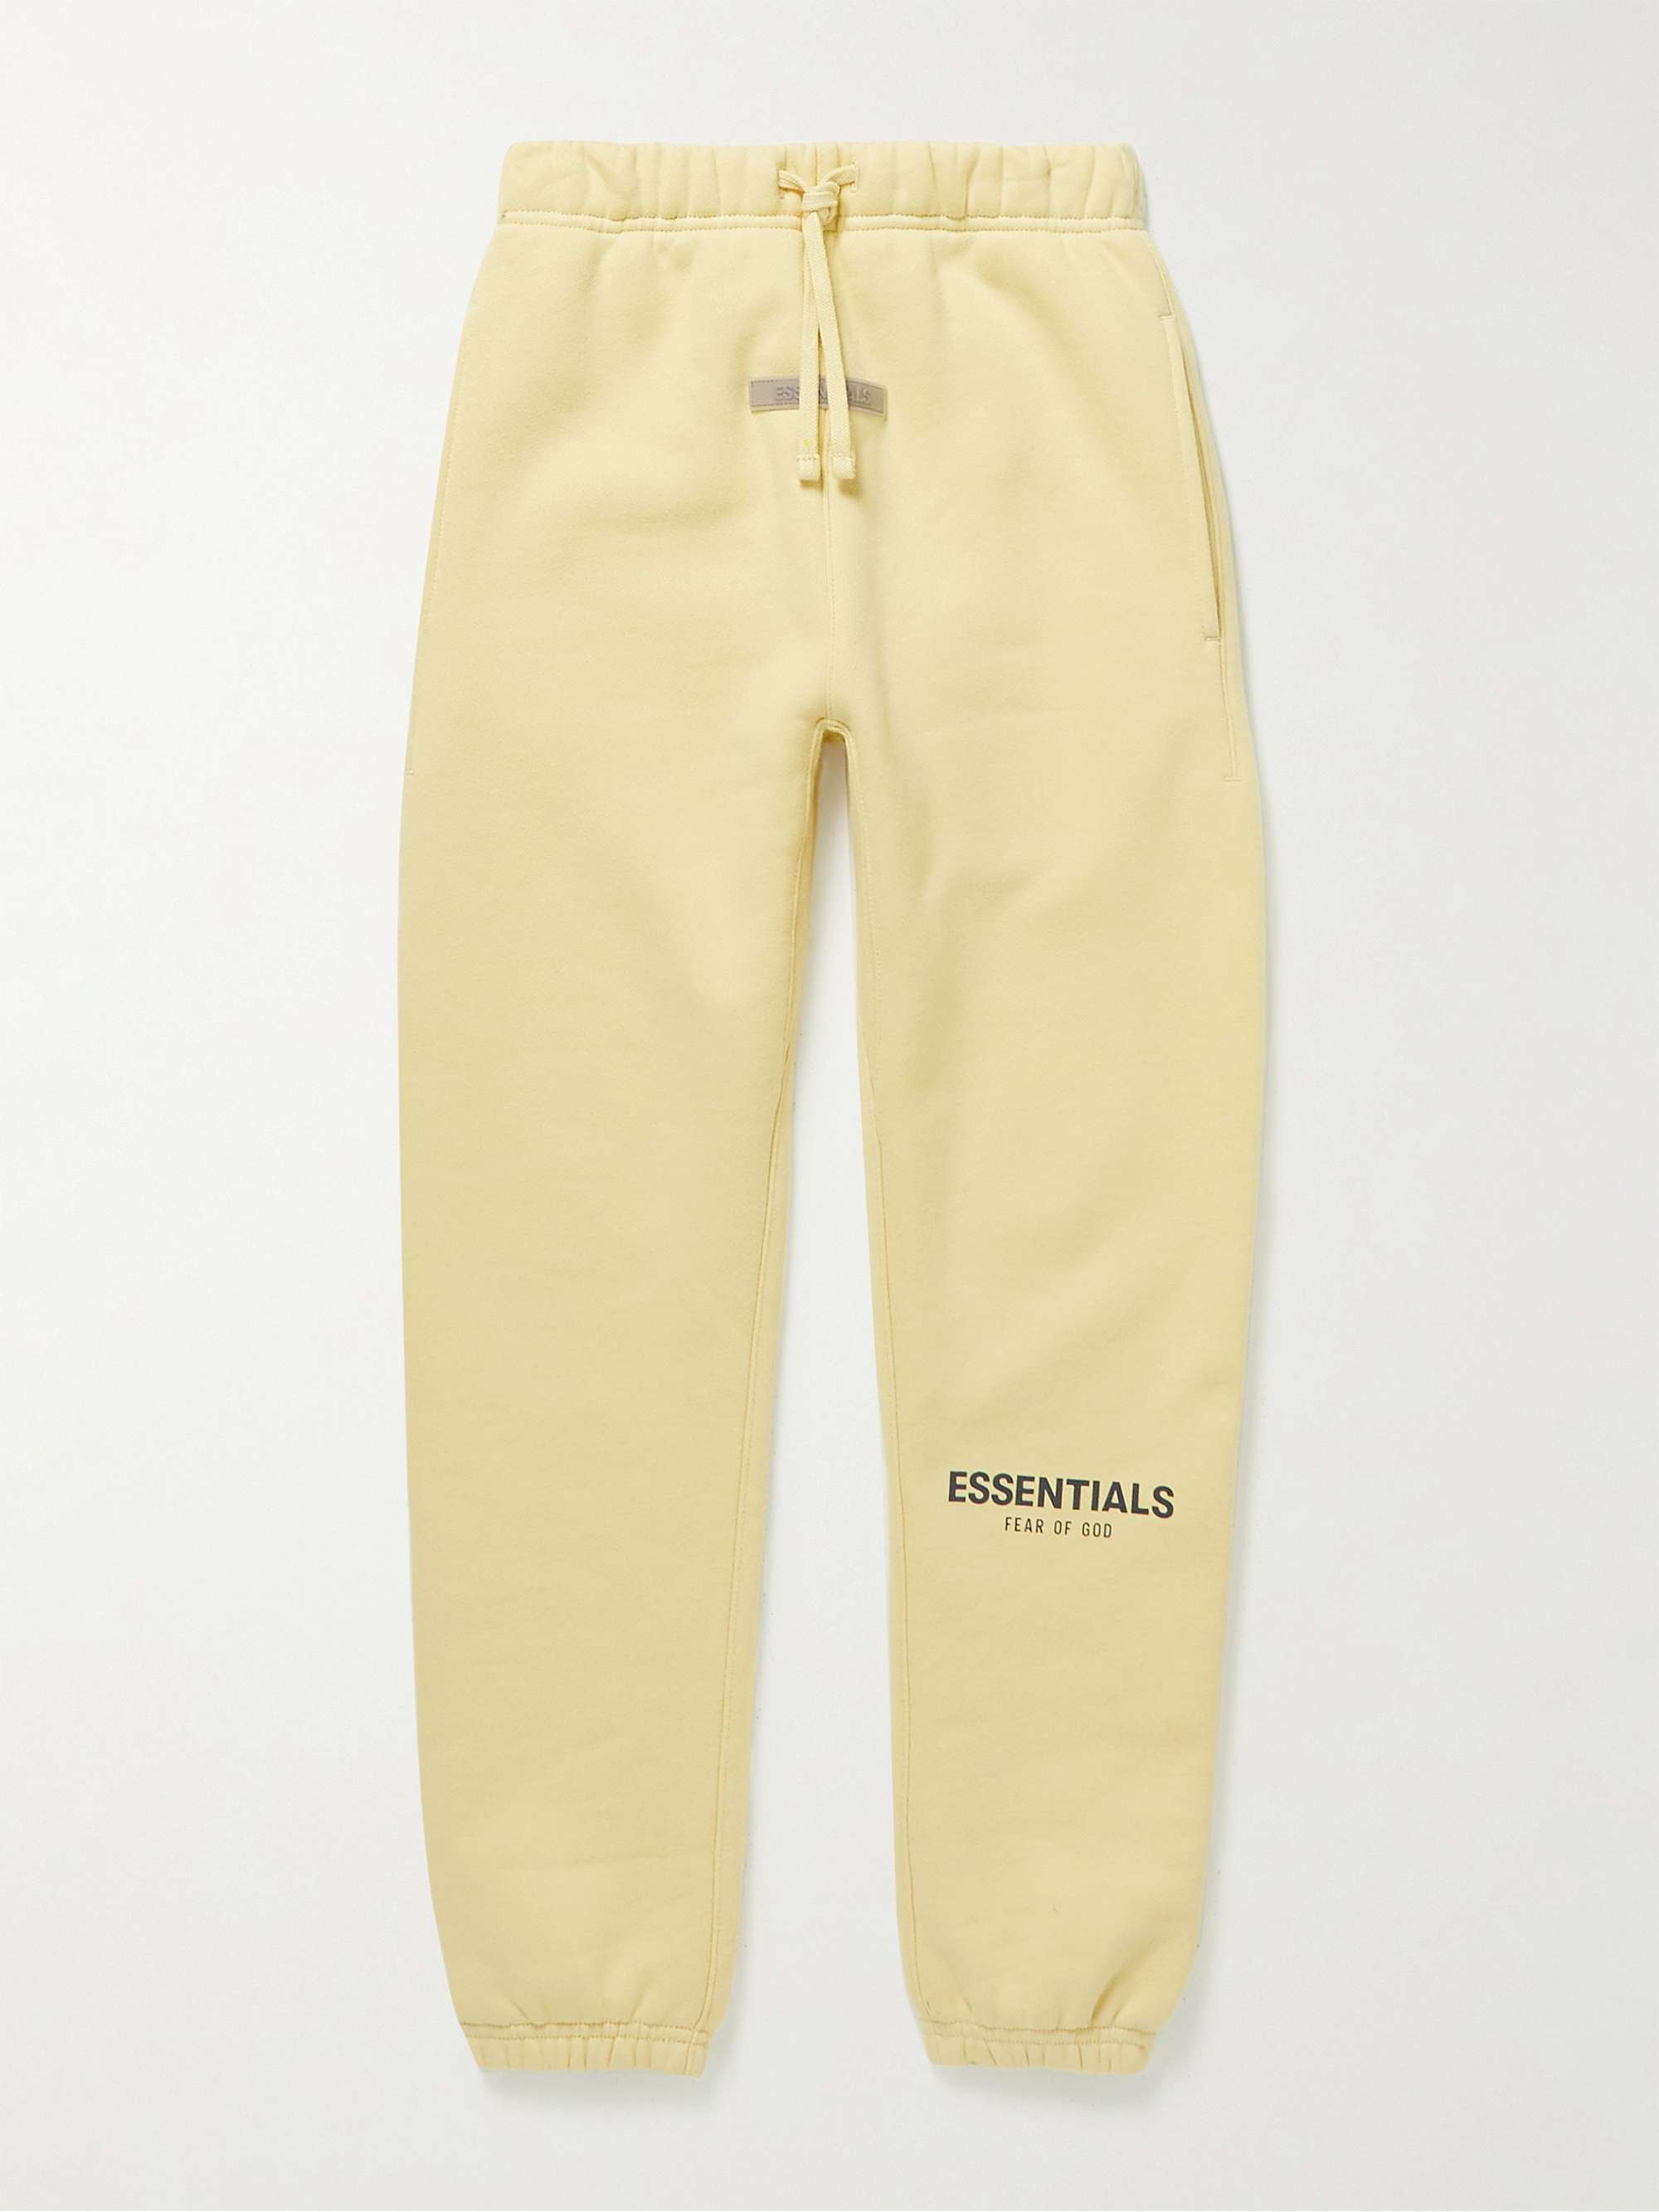 피어오브갓 에센셜 키즈 스웻팬츠 FEAR OF GOD ESSENTIALS KIDS Logo-Print Cotton-Blend Jersey Drawstring Sweatpants,Cream